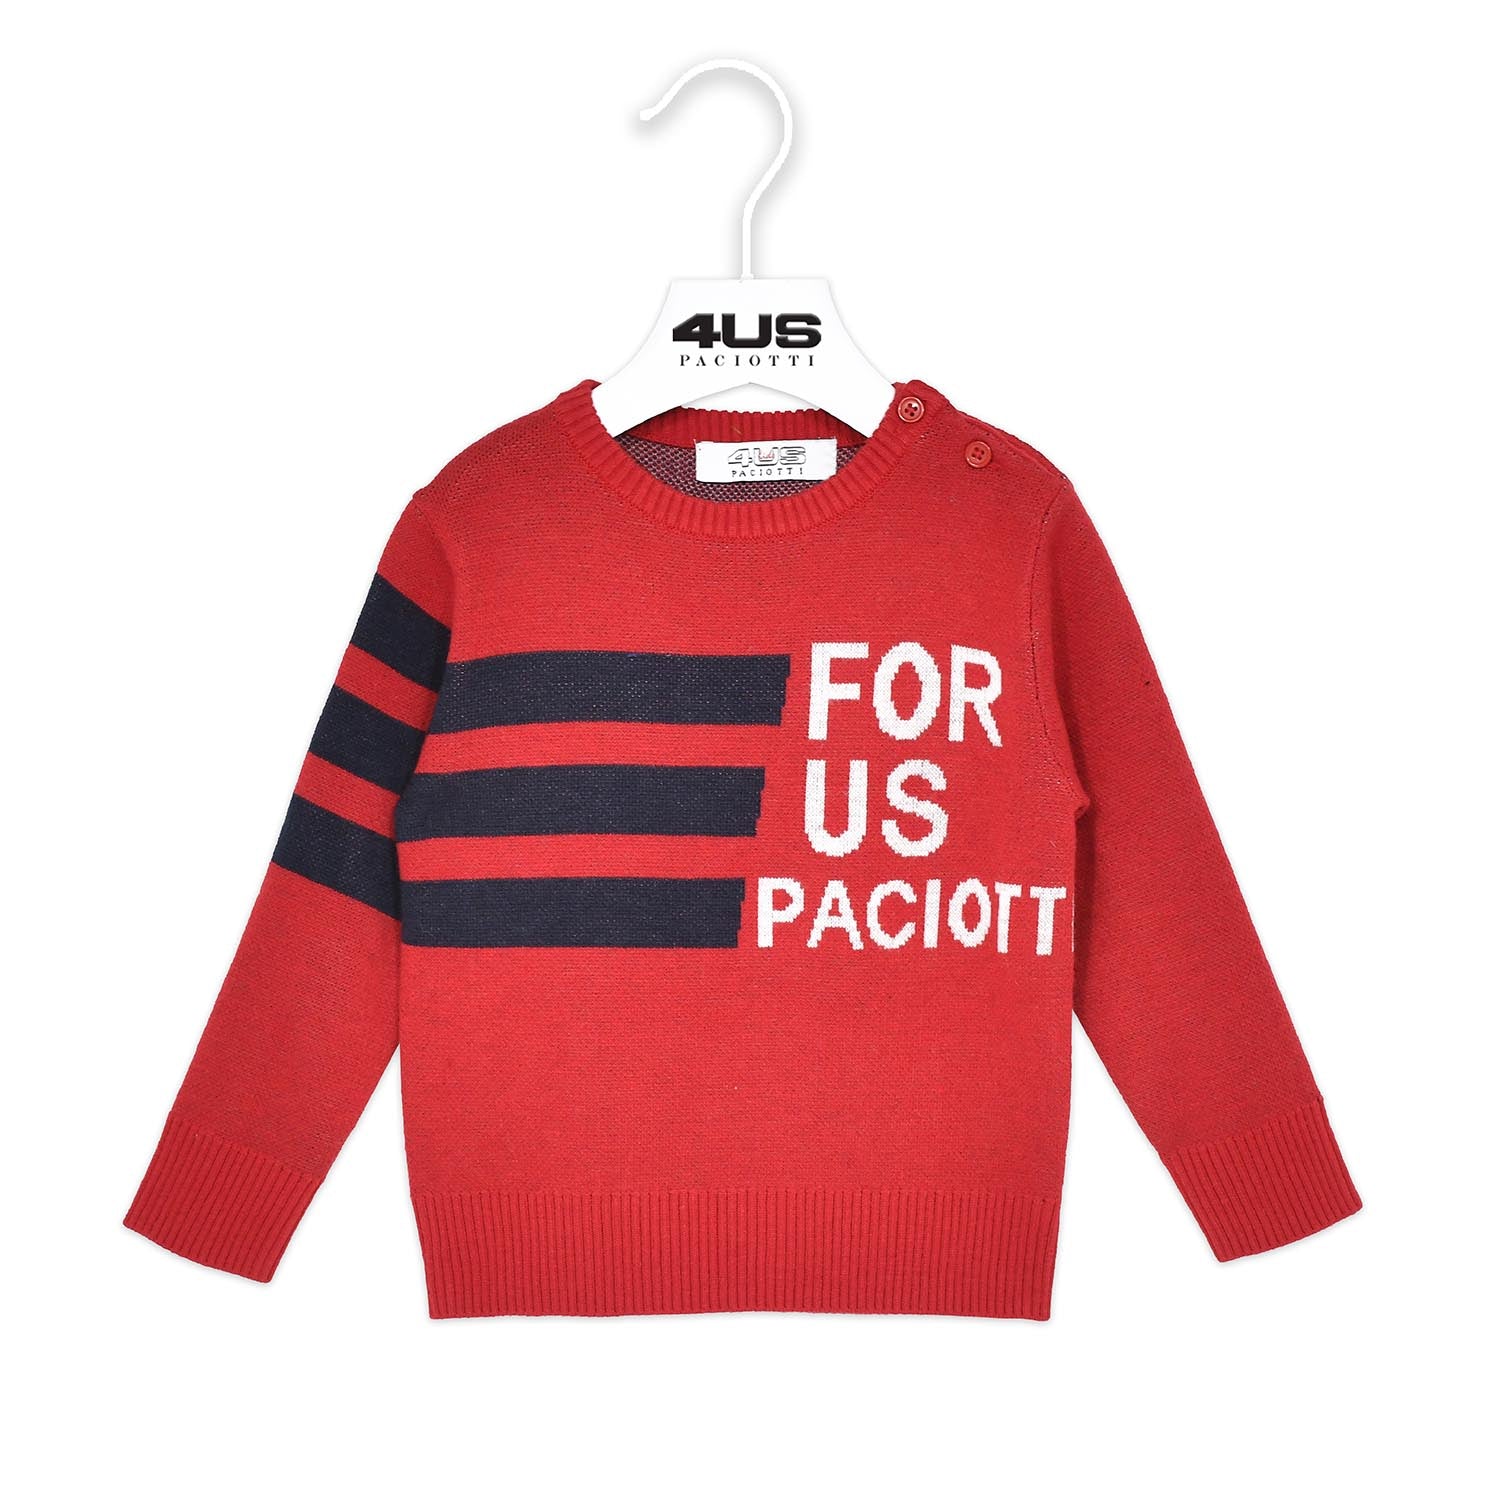 Maglione baby boy 4US Paciotti in maglia